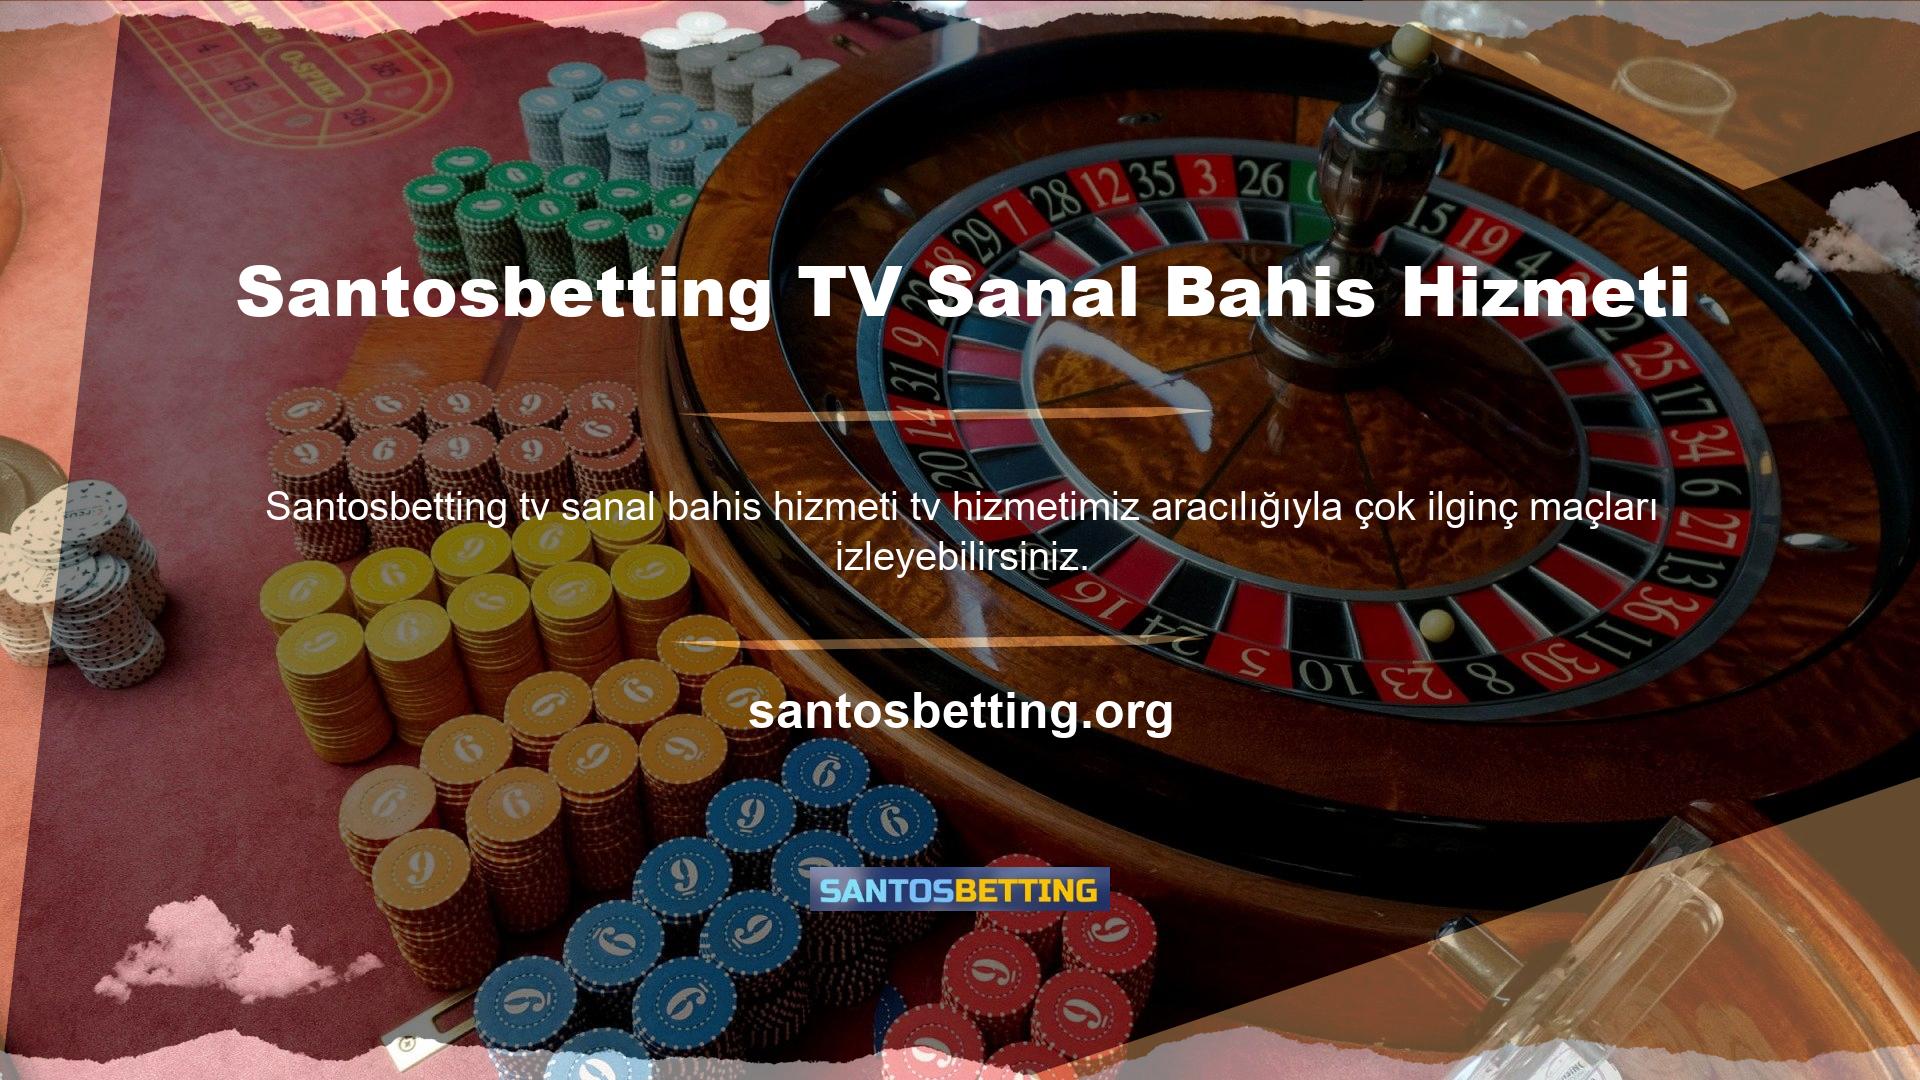 Sanal bahis hizmeti Santosbetting TV, yerel maç izlemenin kaldırıldığını ve çoğu spor dalında en popüler liglerin tanıtıldığını duyurdu